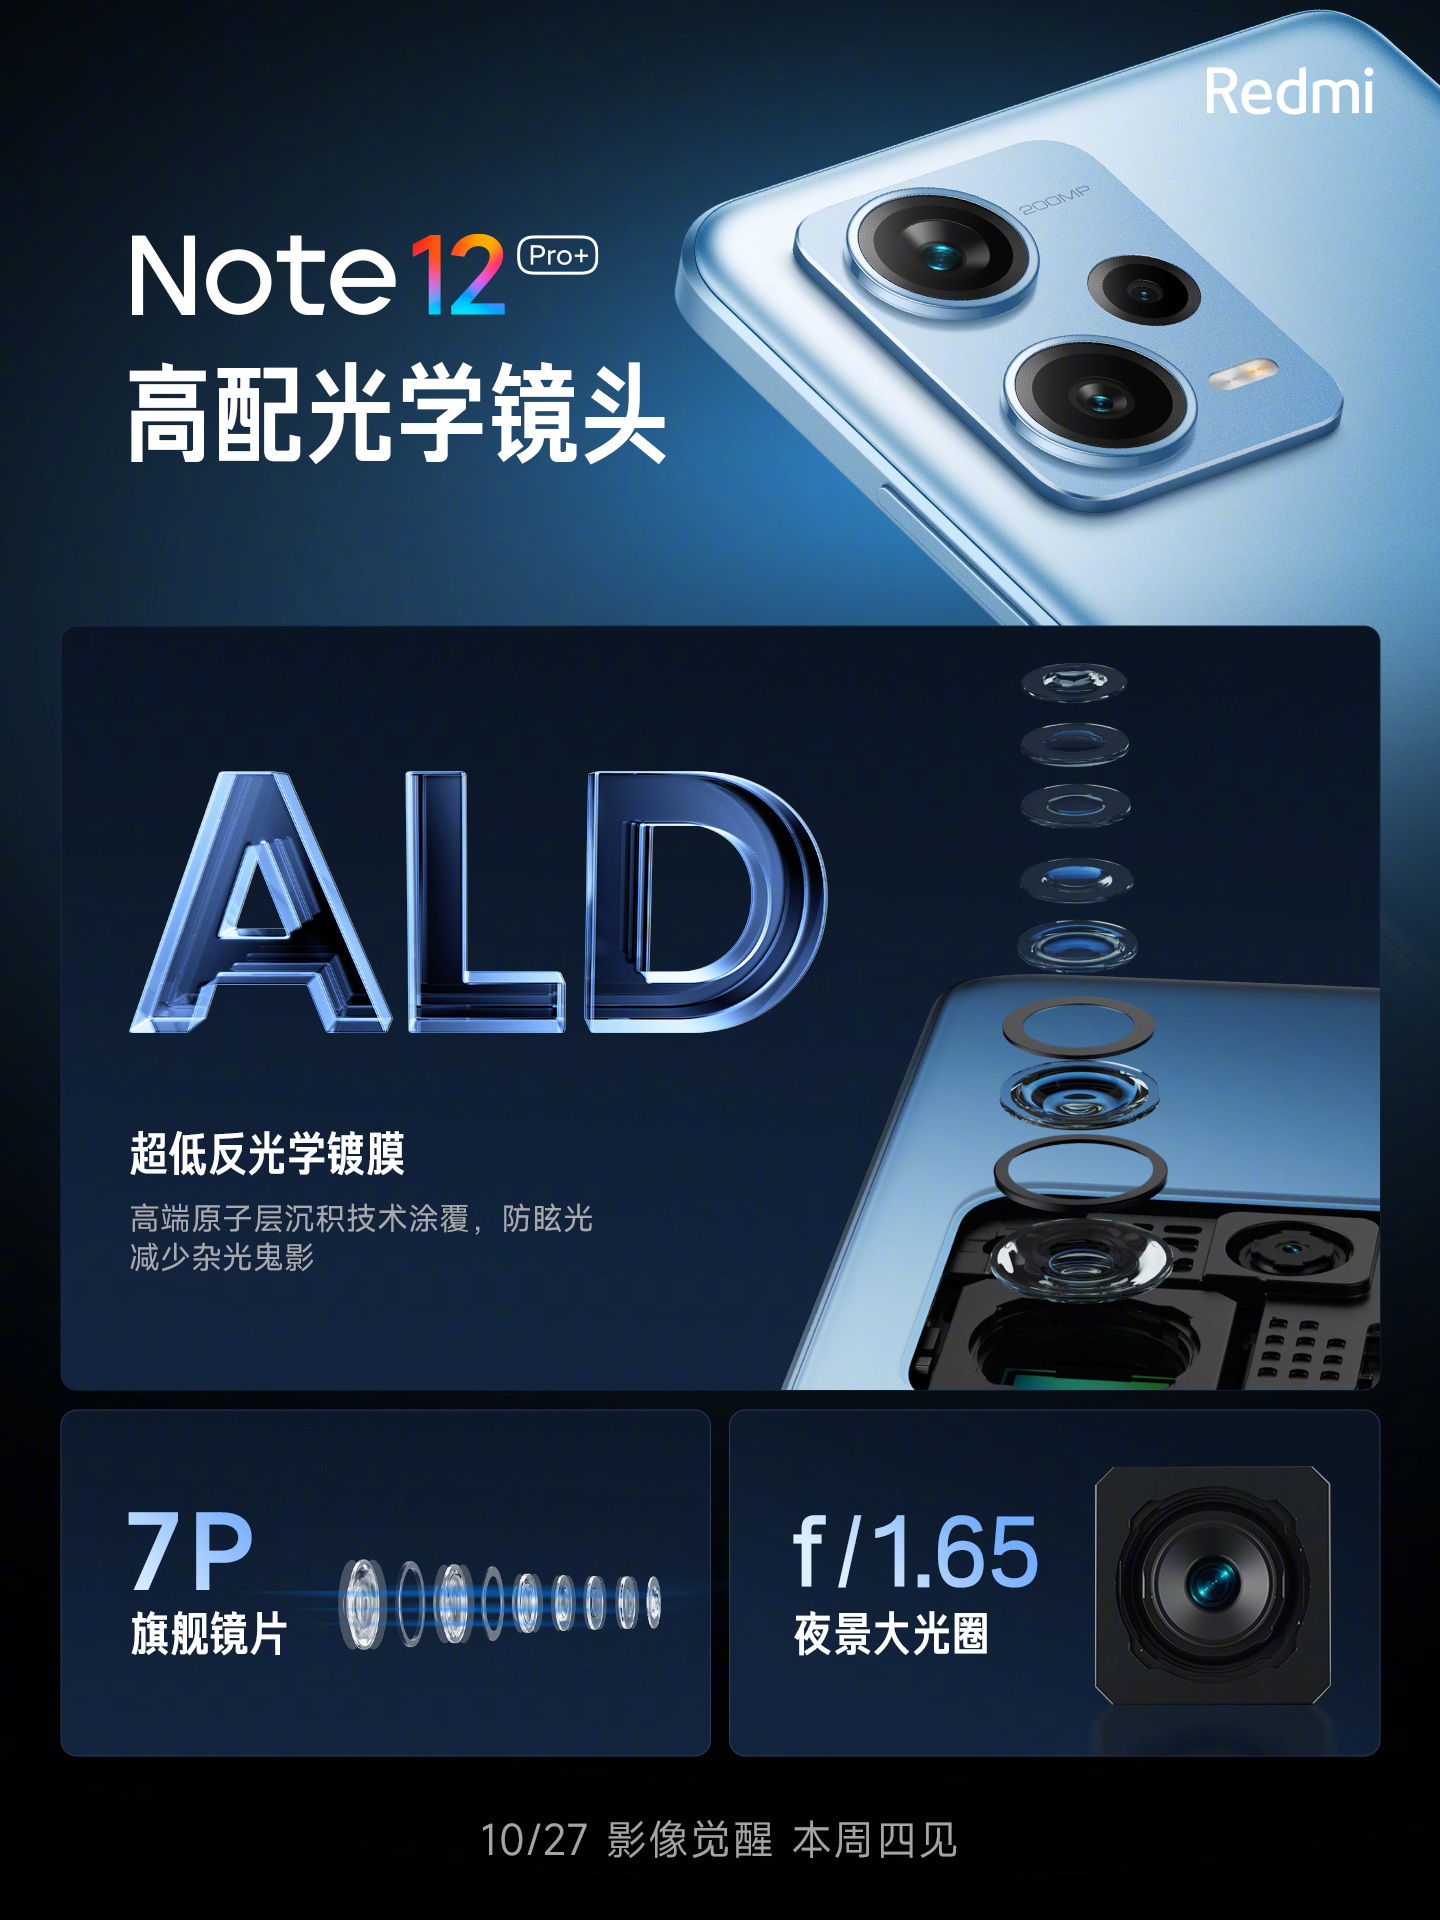 دوربین Redmi Note 12 Pro+ 200 MP